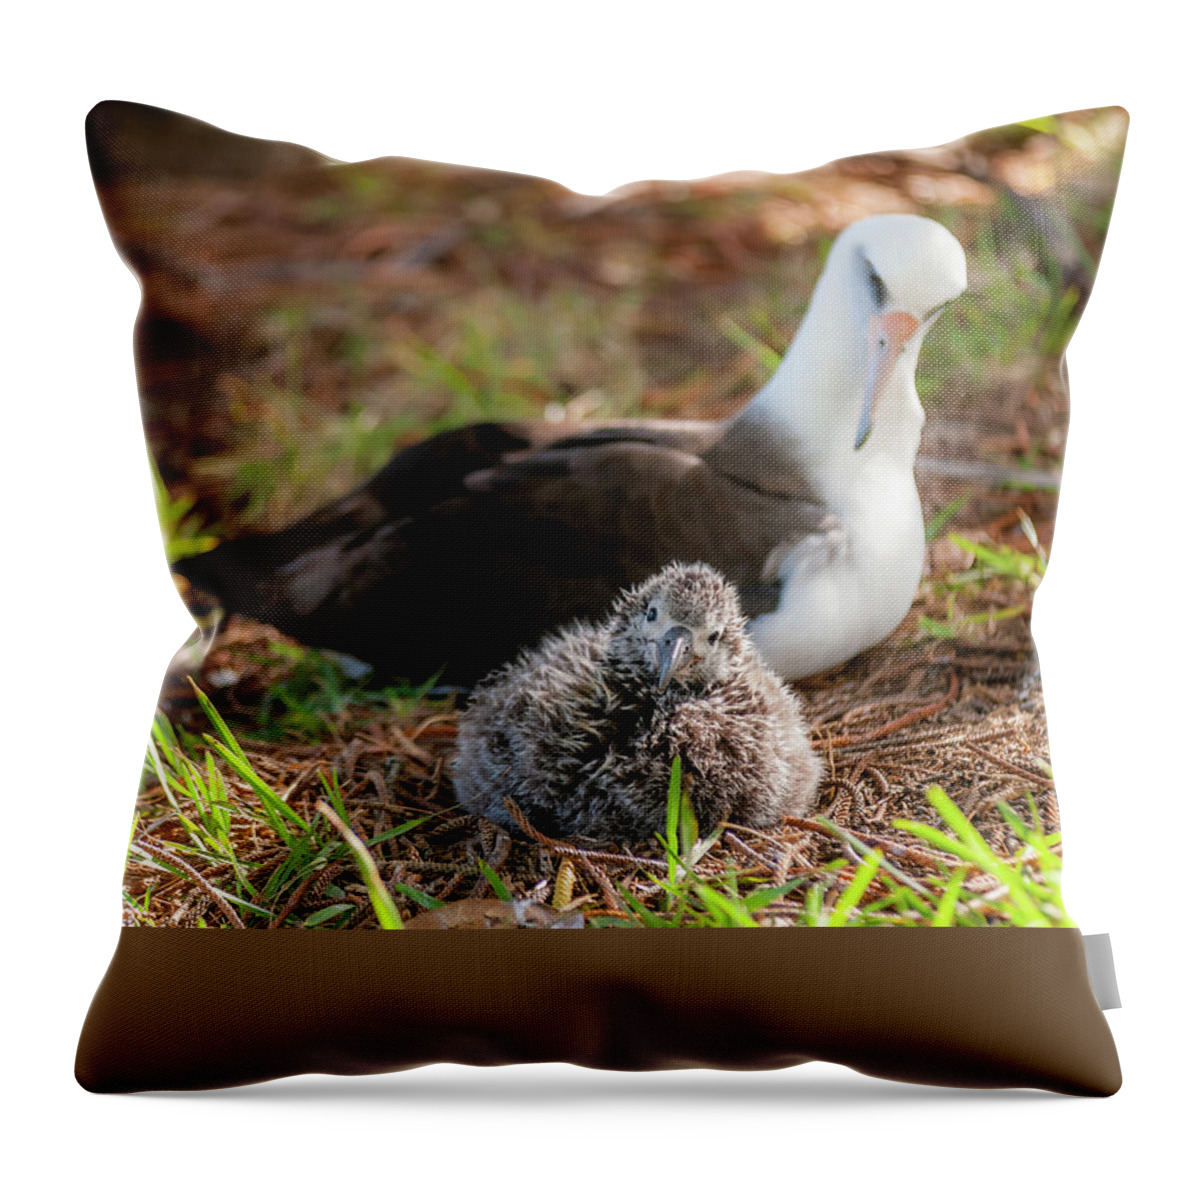 Kauai Throw Pillow featuring the photograph Laysan Albatross and Chick IV. by Doug Davidson